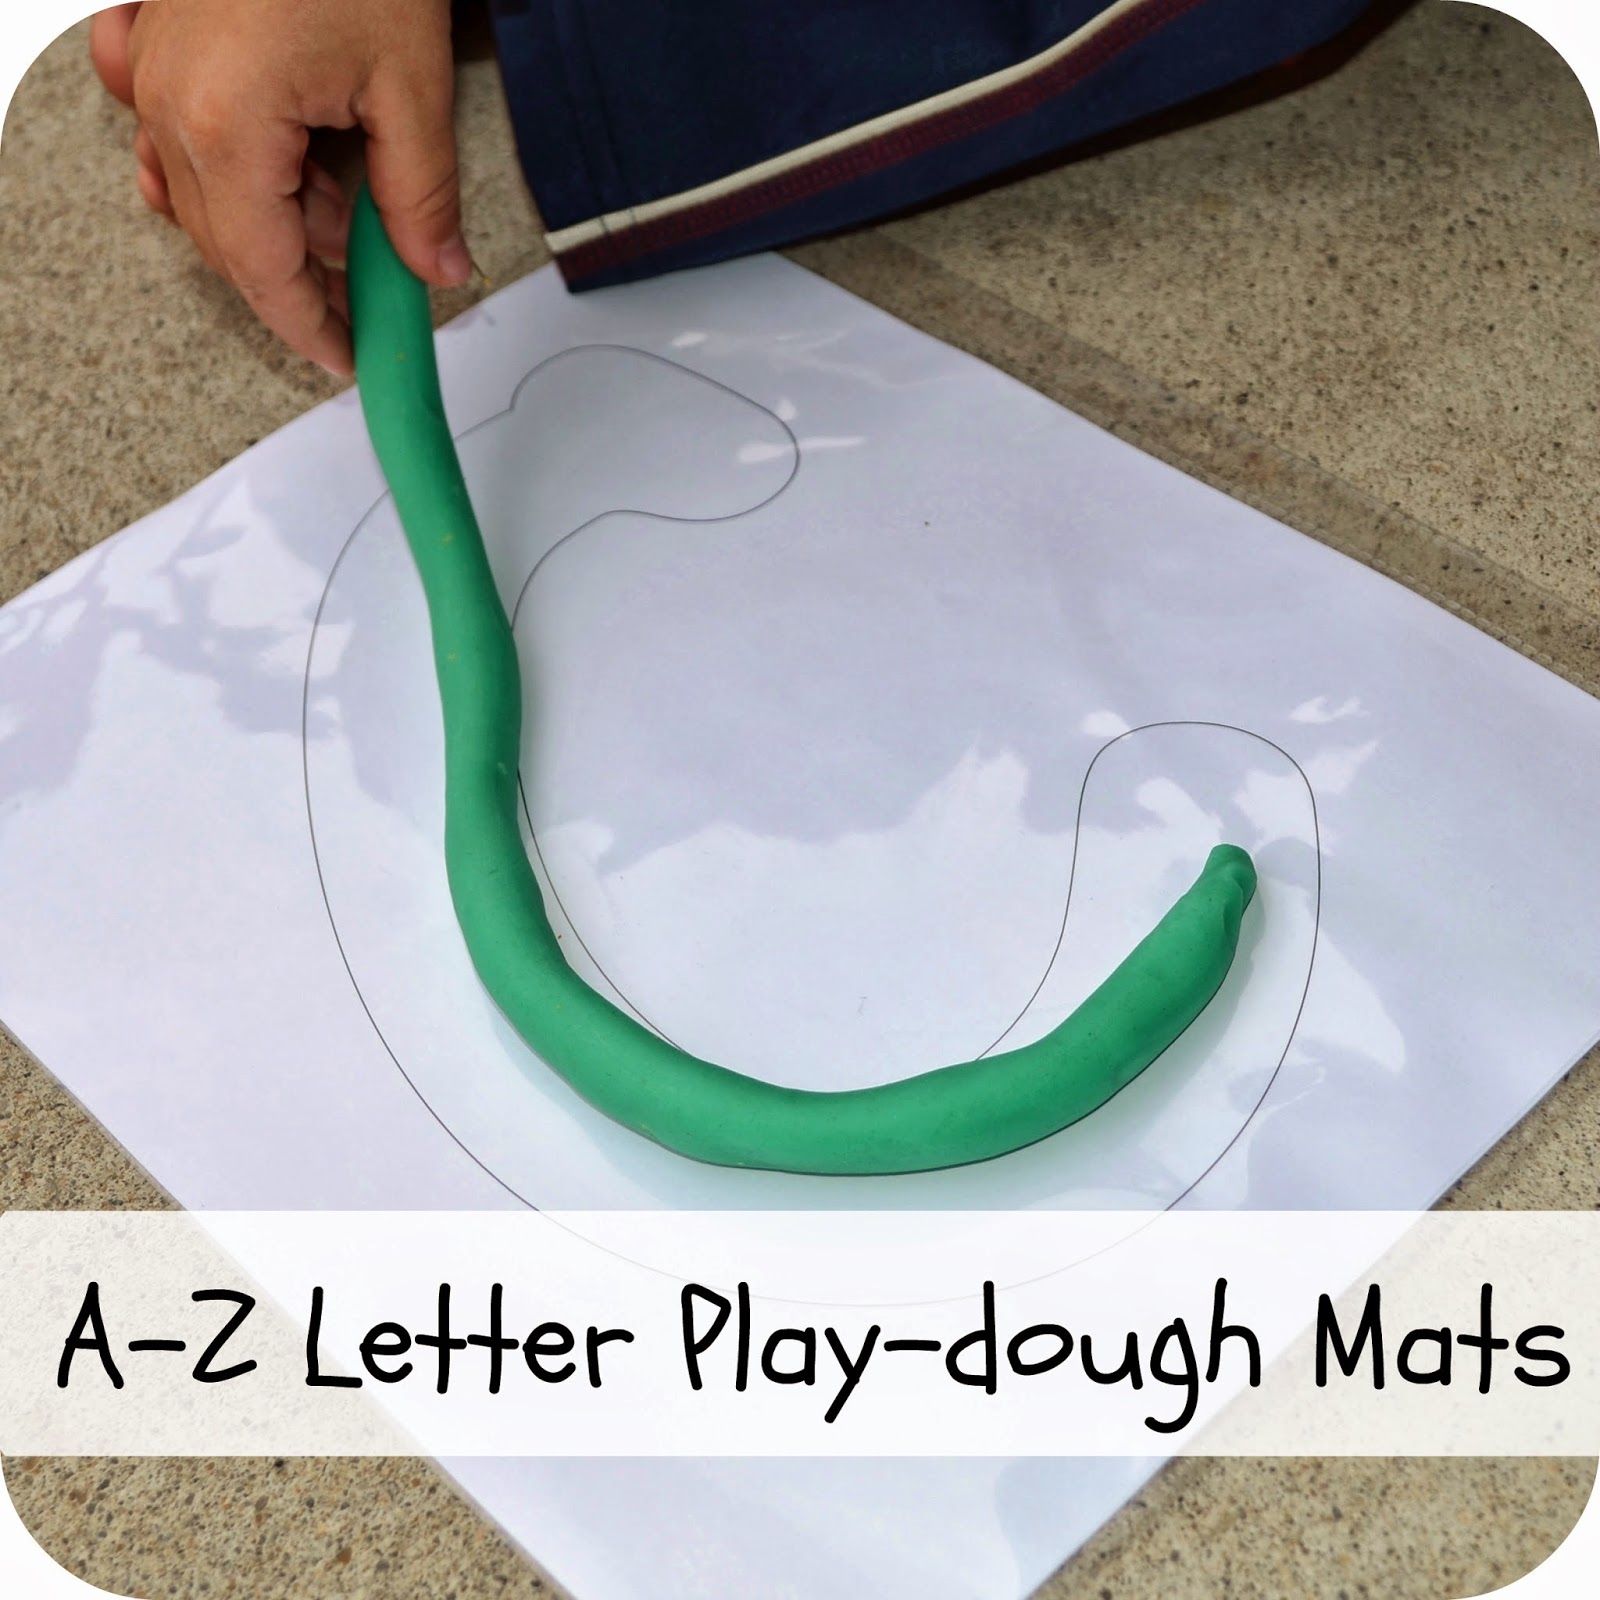 A-Z play-dough mats